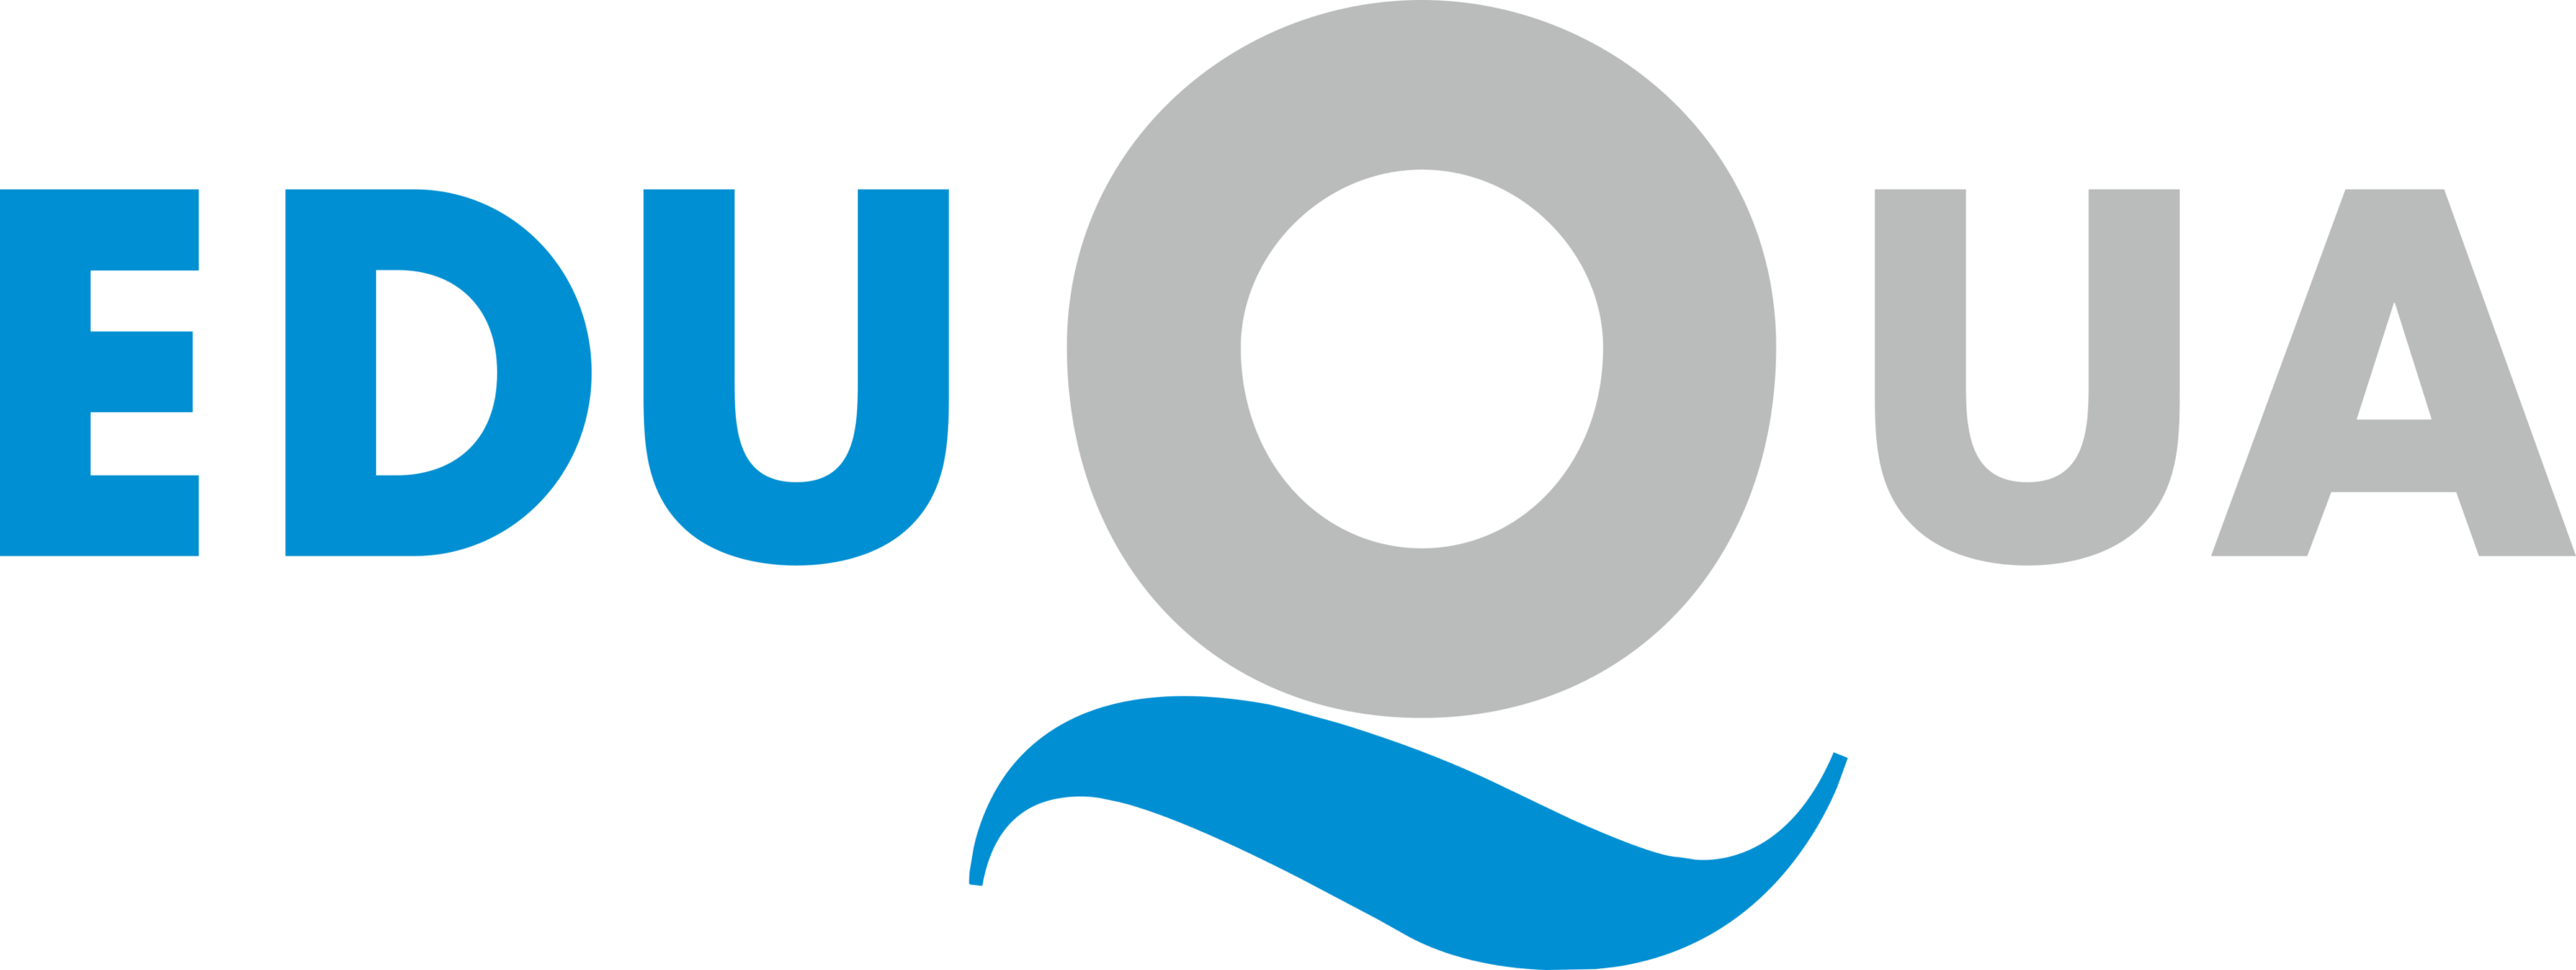 eduQua Logo